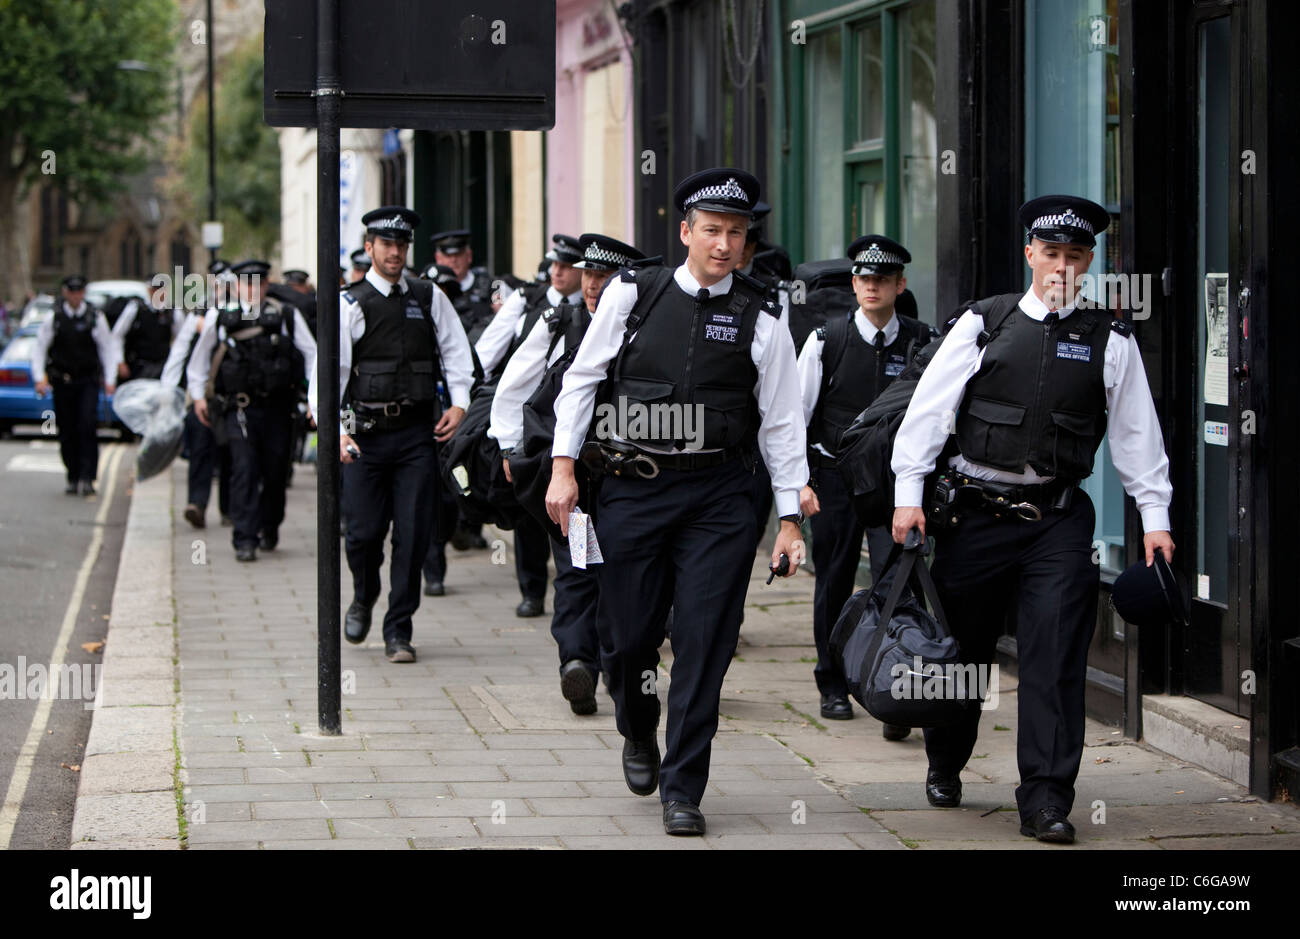 Un gruppo di poliziotti metropolitani in arrivo a Notting Hill Carnival, Londra, Inghilterra, Regno Unito, GB. Foto Stock